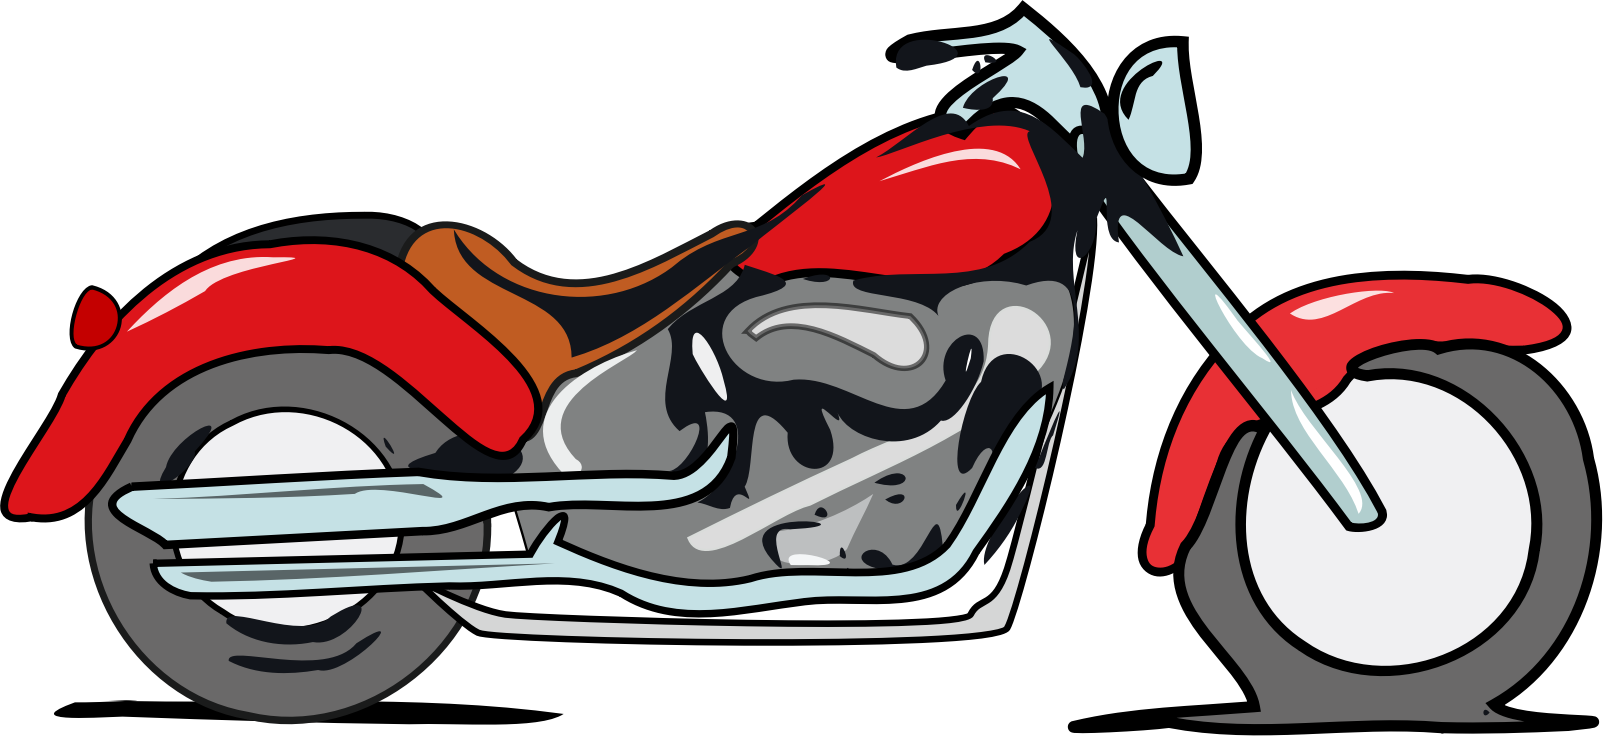  kawasaki. Motorcycle clipart stylized